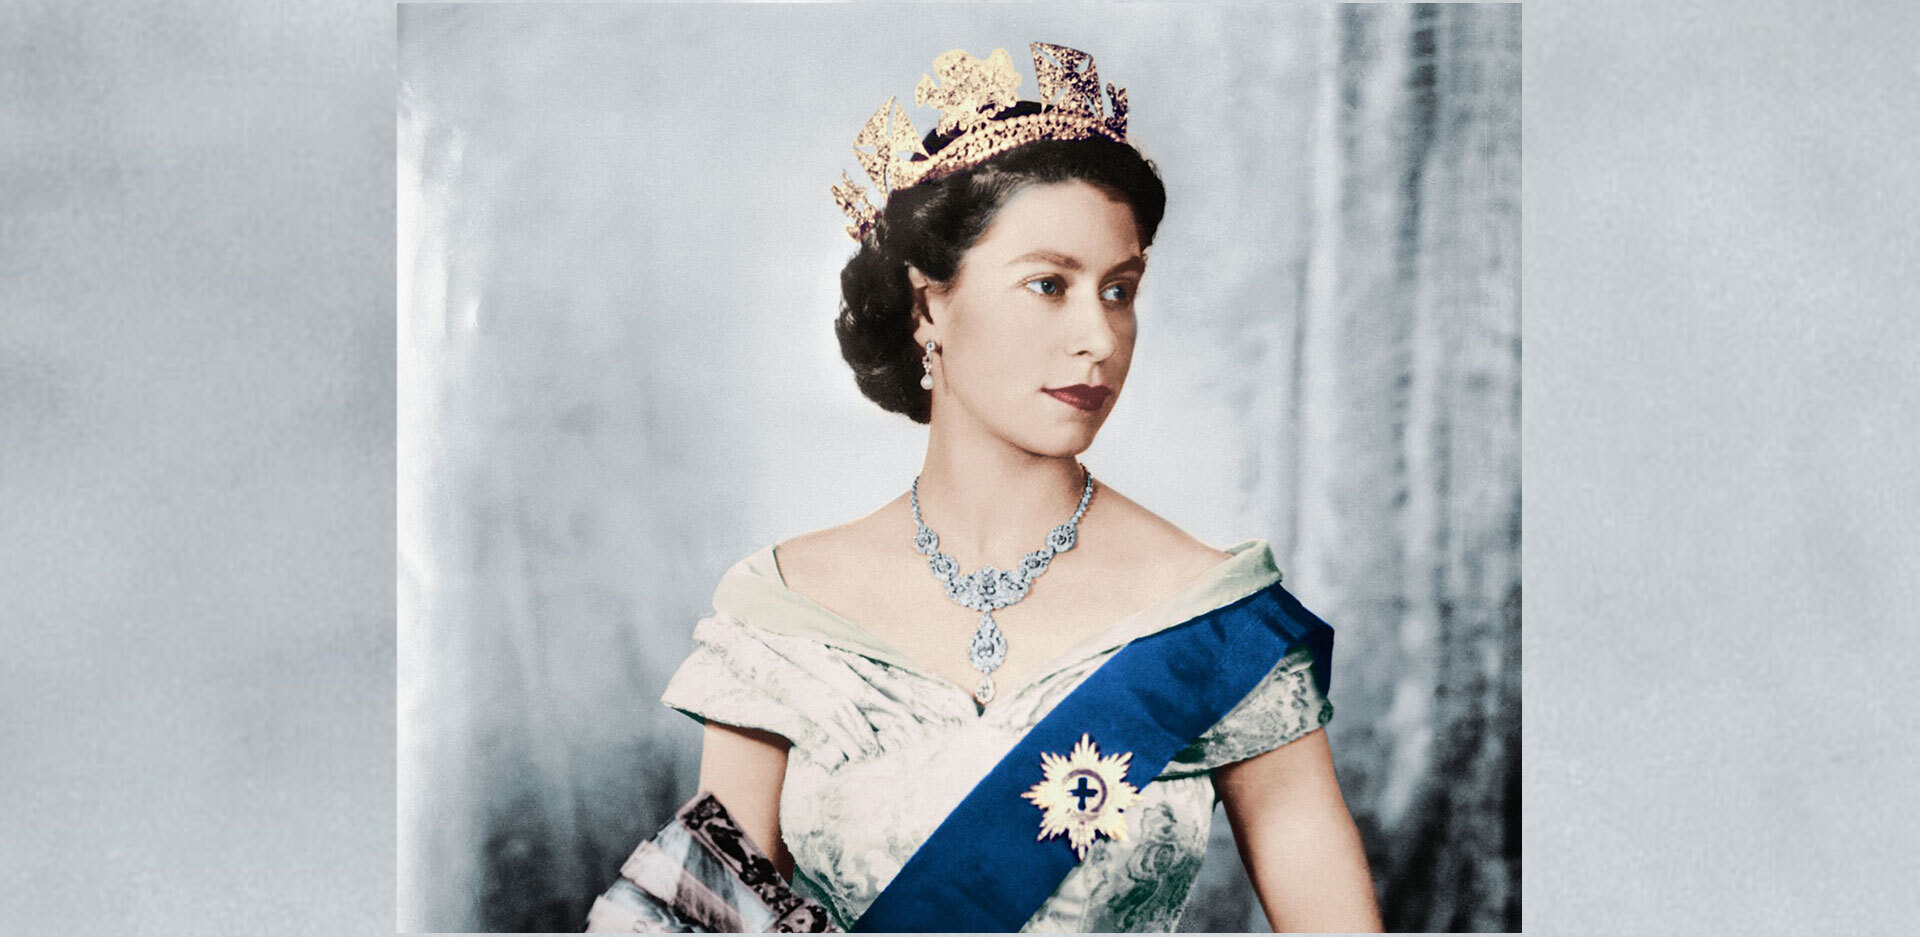 Η ζωή της βασίλισσας Ελισάβετ ΙΙ μέσα από 40 άρθρα